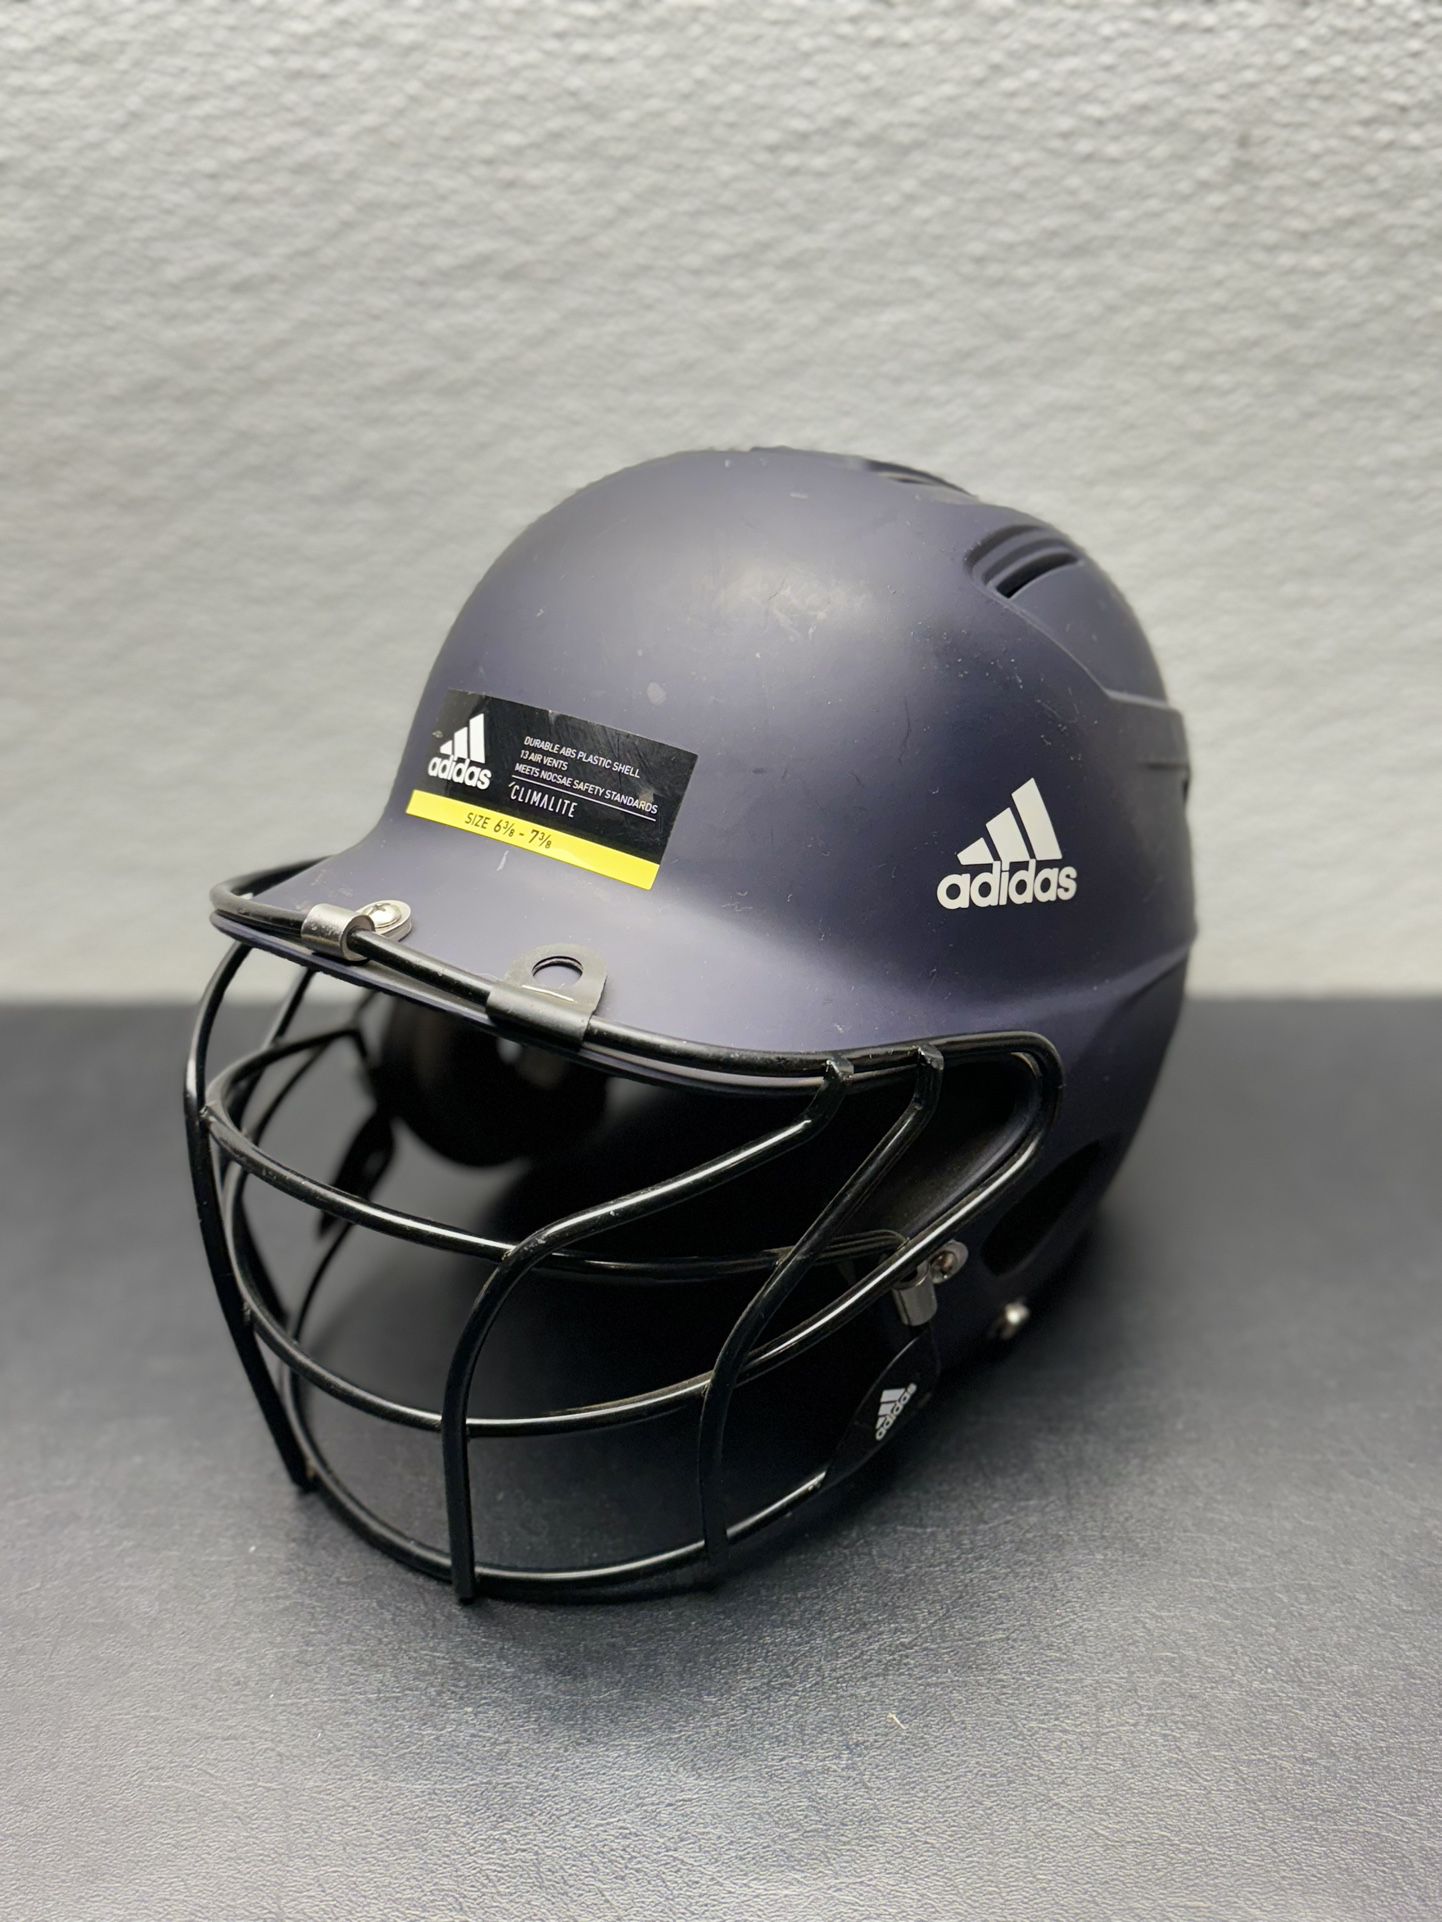 Adidas Fastpitch Softball Batting Helmet w/ Face Guard 